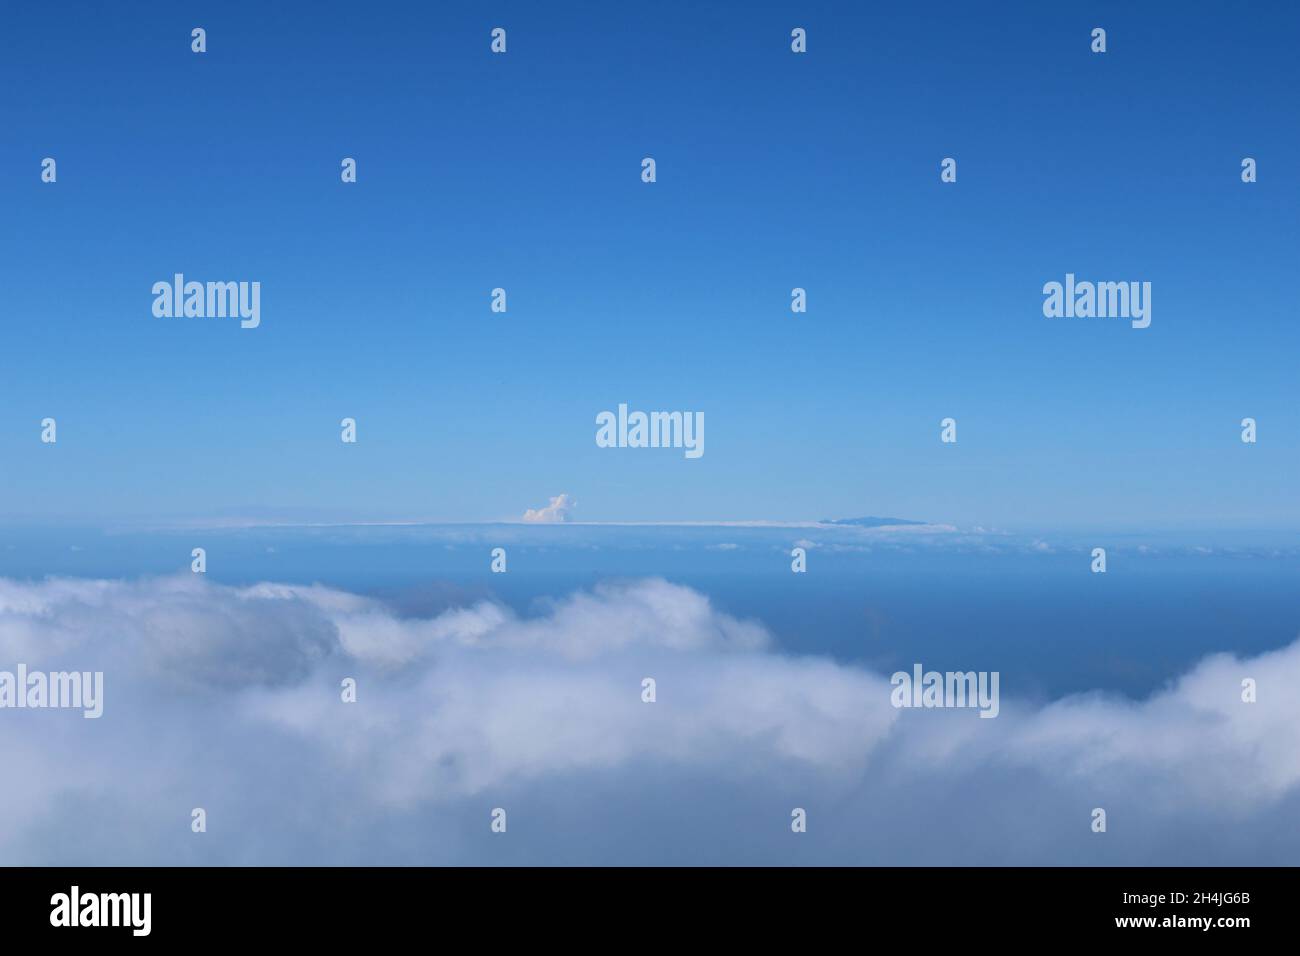 Mar De Nubes Stockfoto